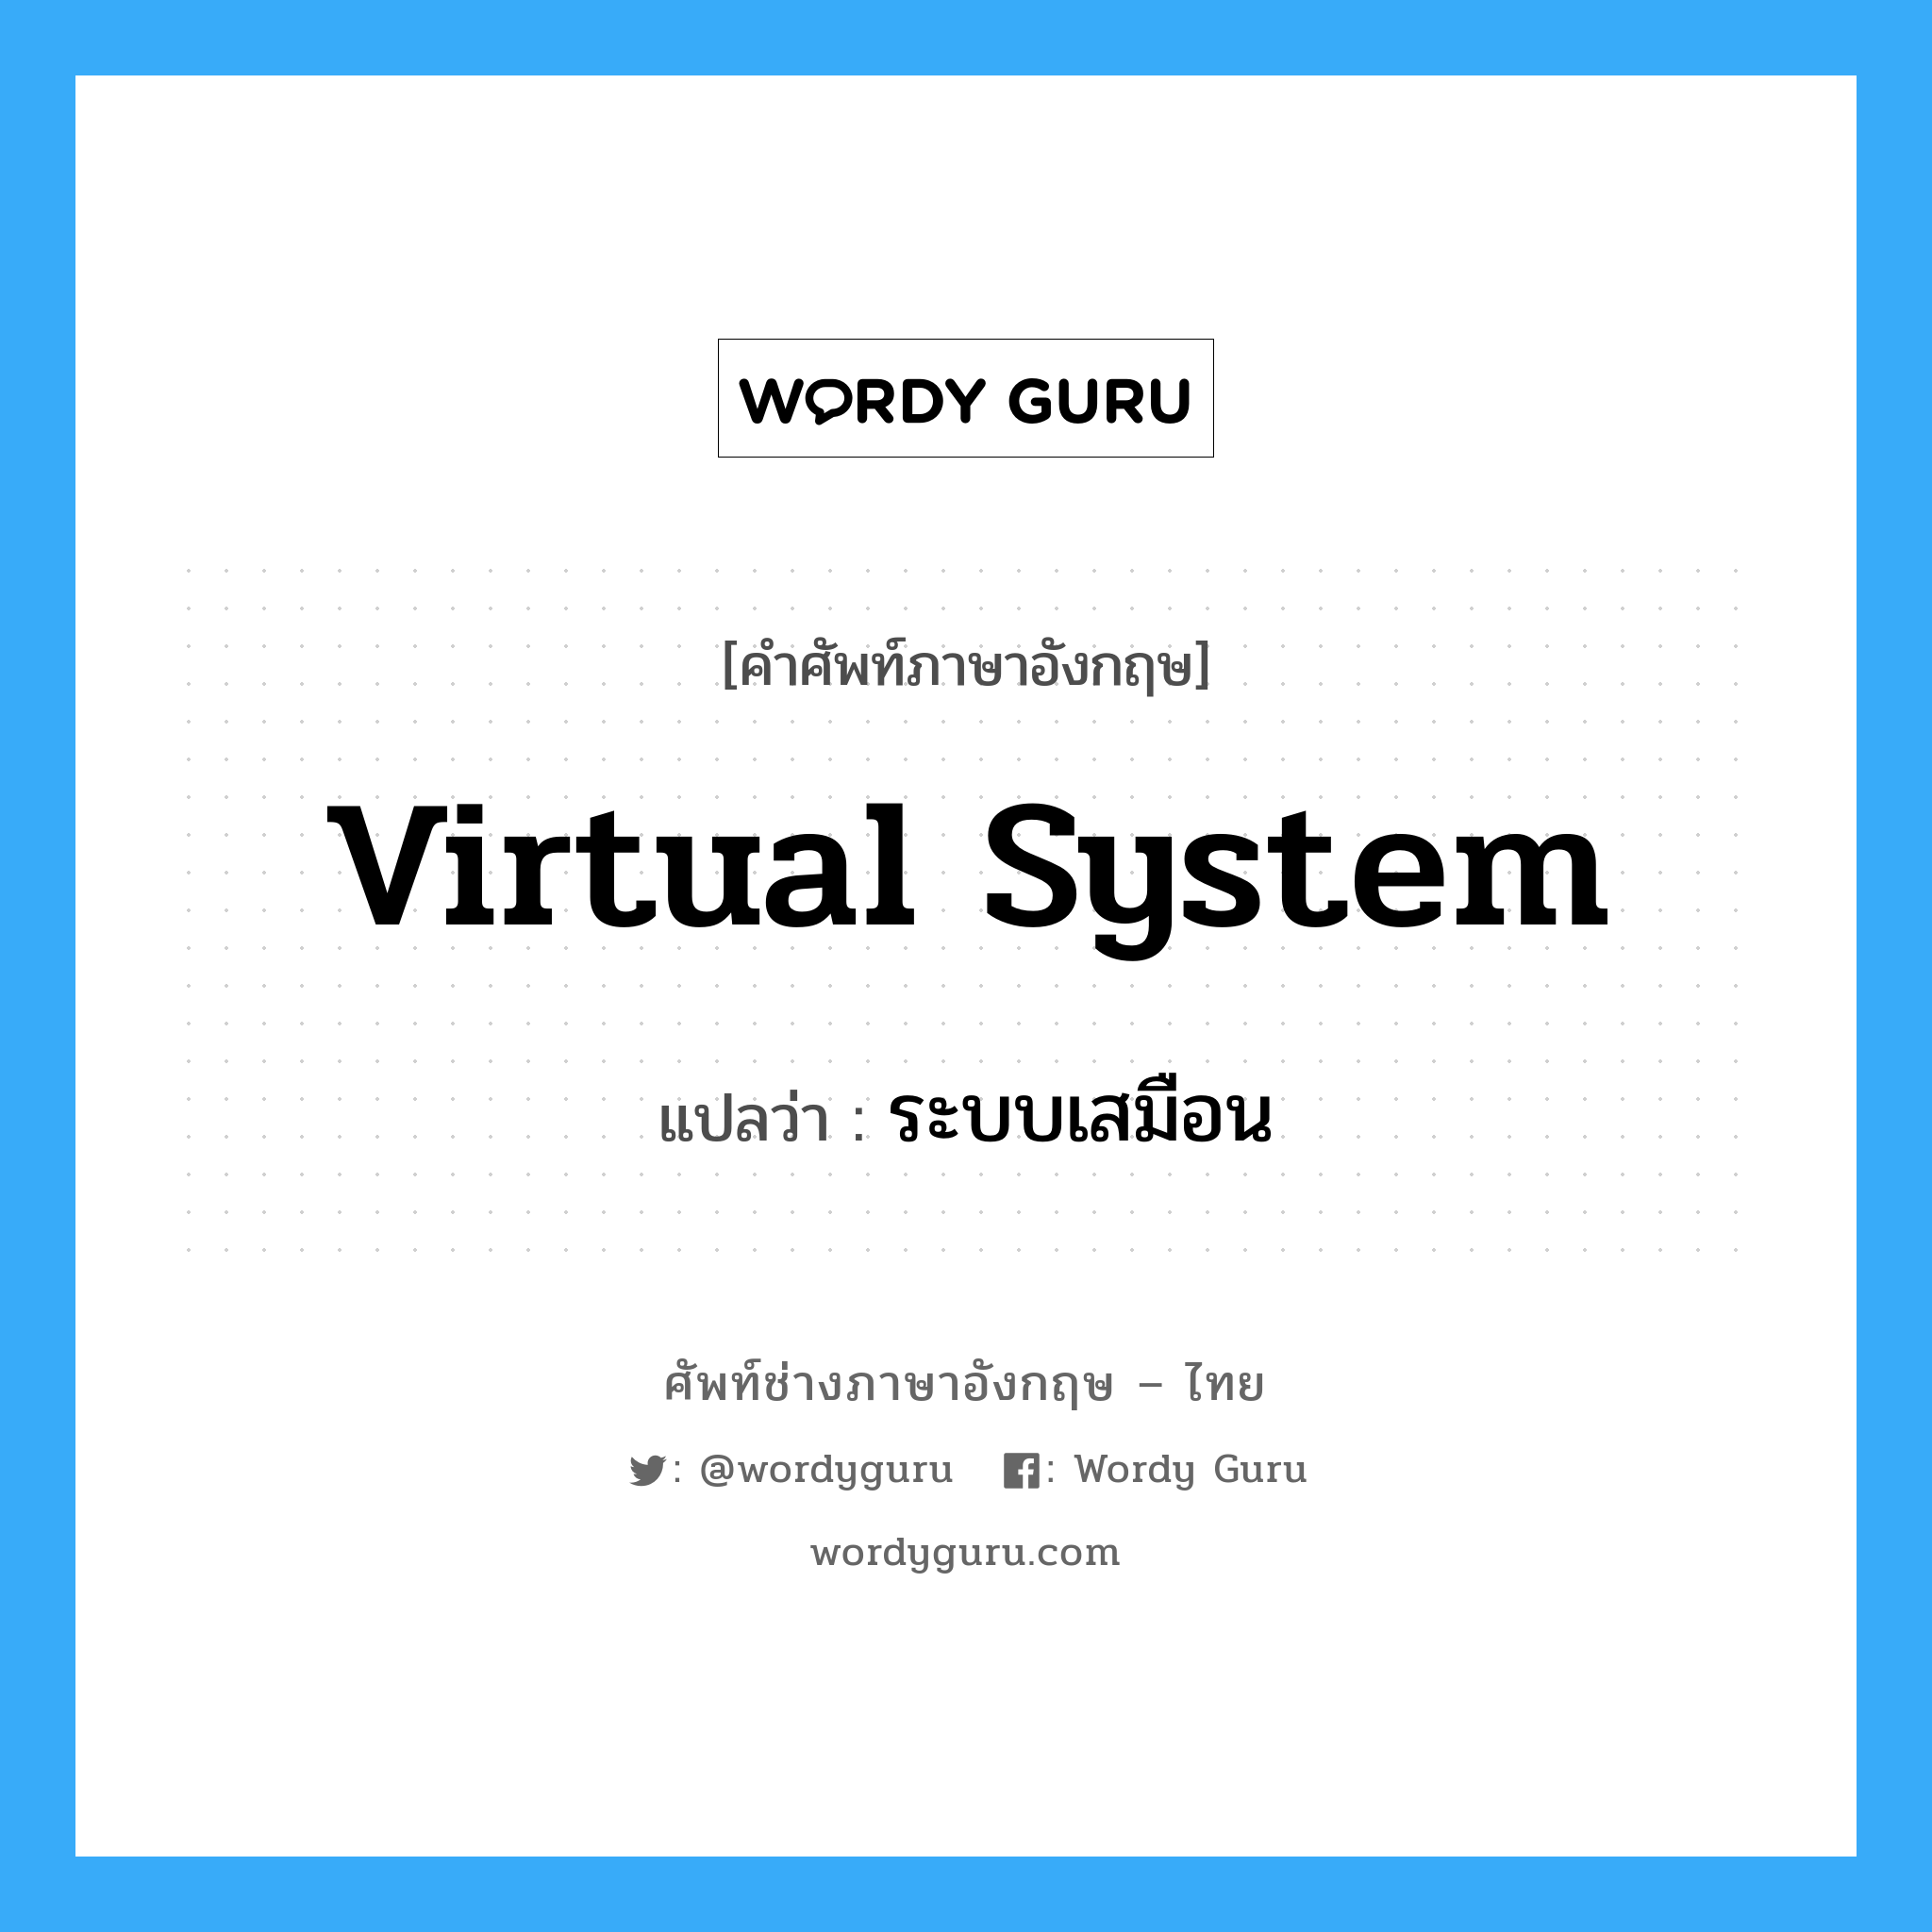 ระบบเสมือน ภาษาอังกฤษ?, คำศัพท์ช่างภาษาอังกฤษ - ไทย ระบบเสมือน คำศัพท์ภาษาอังกฤษ ระบบเสมือน แปลว่า Virtual System